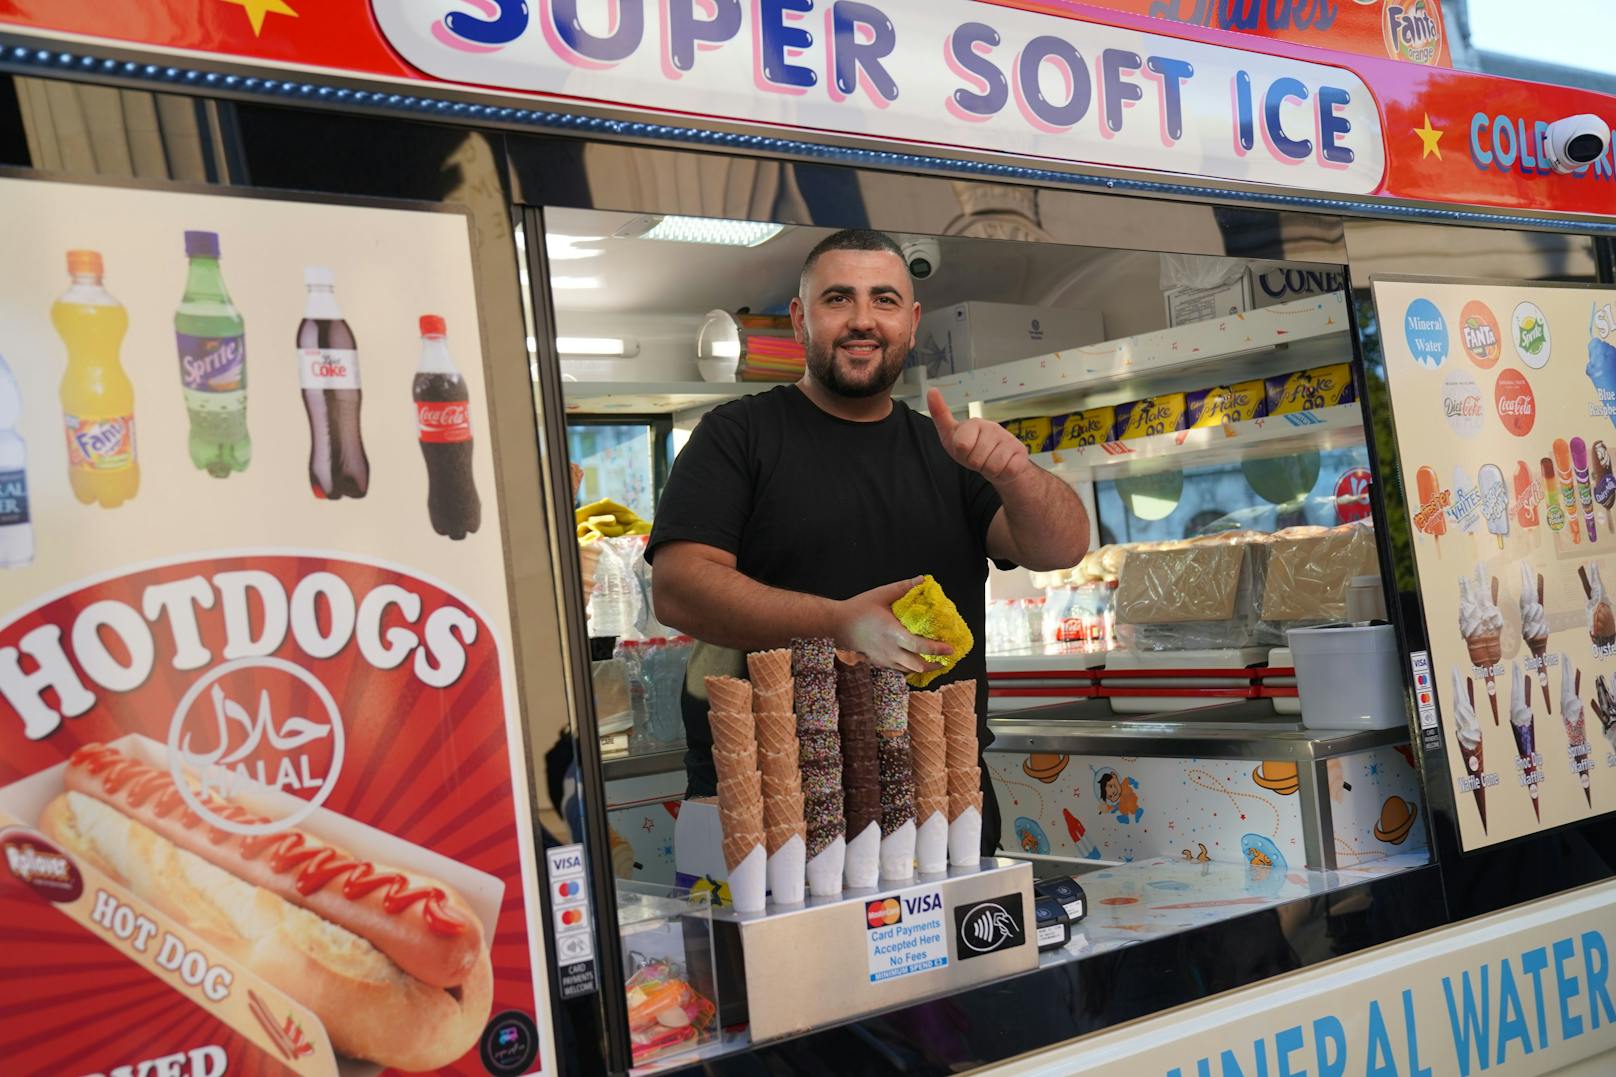 Hotdog-Mann verkauft wartenden Londonern Wurst um 10 €